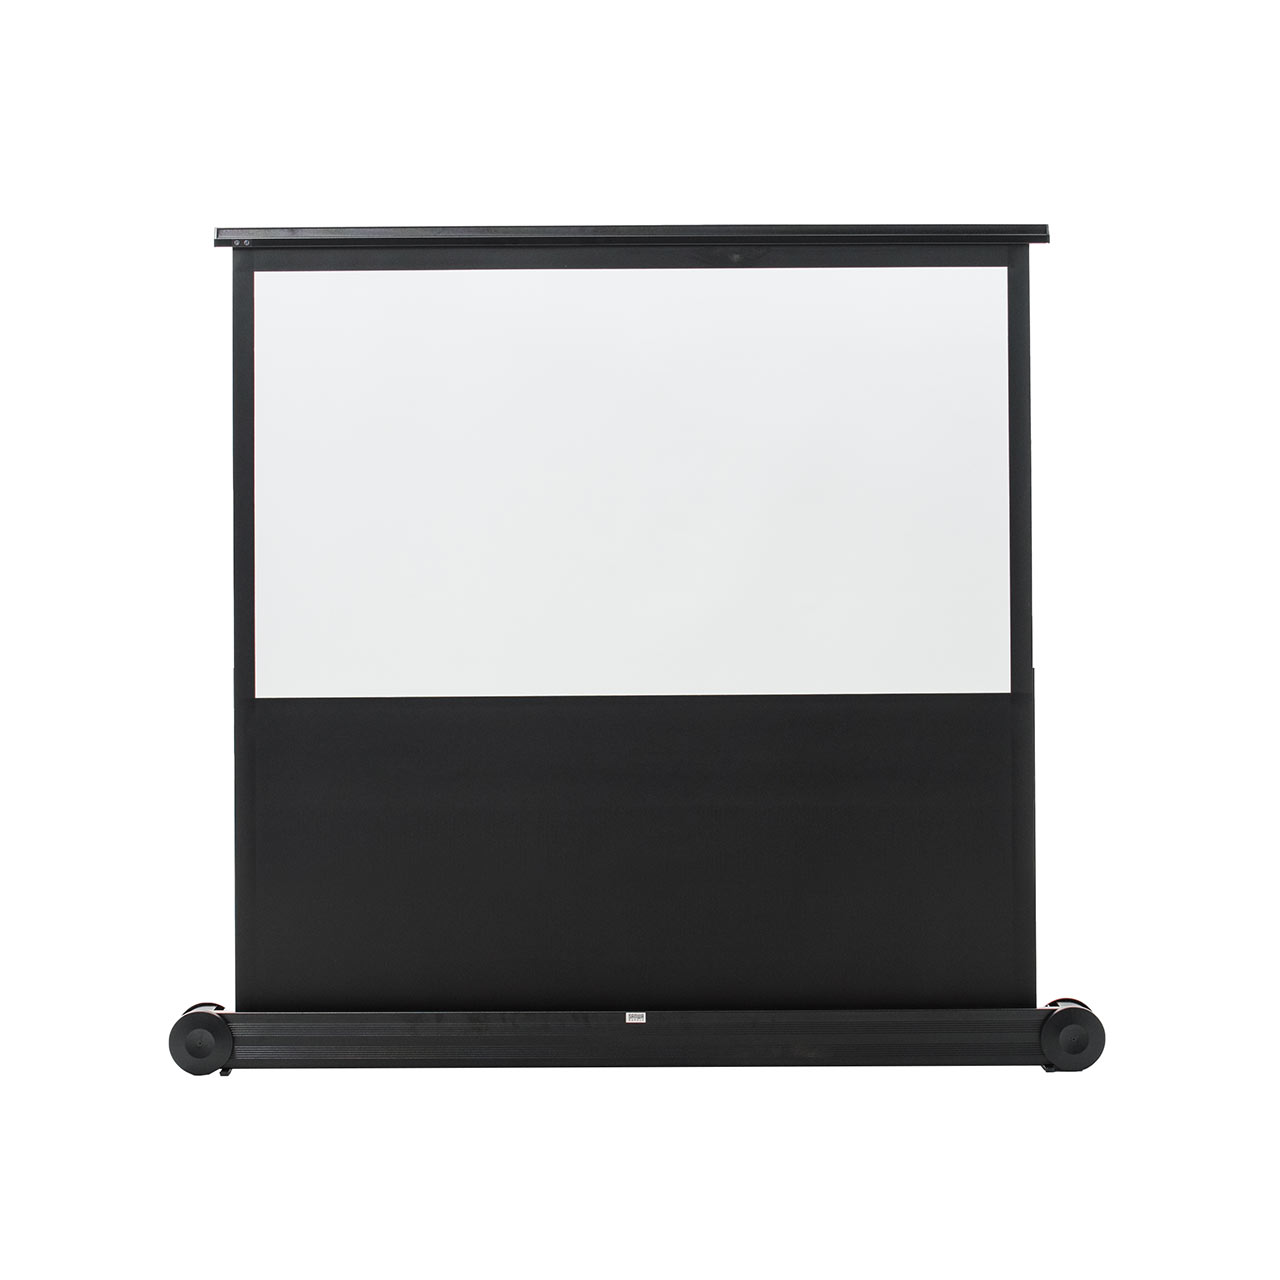 プロジェクタースクリーン 簡単設置 自立 パンタグラフ式 持ち運び可能 床置き 移動ローラー付 60インチ 選挙グッズ 100-PRS013